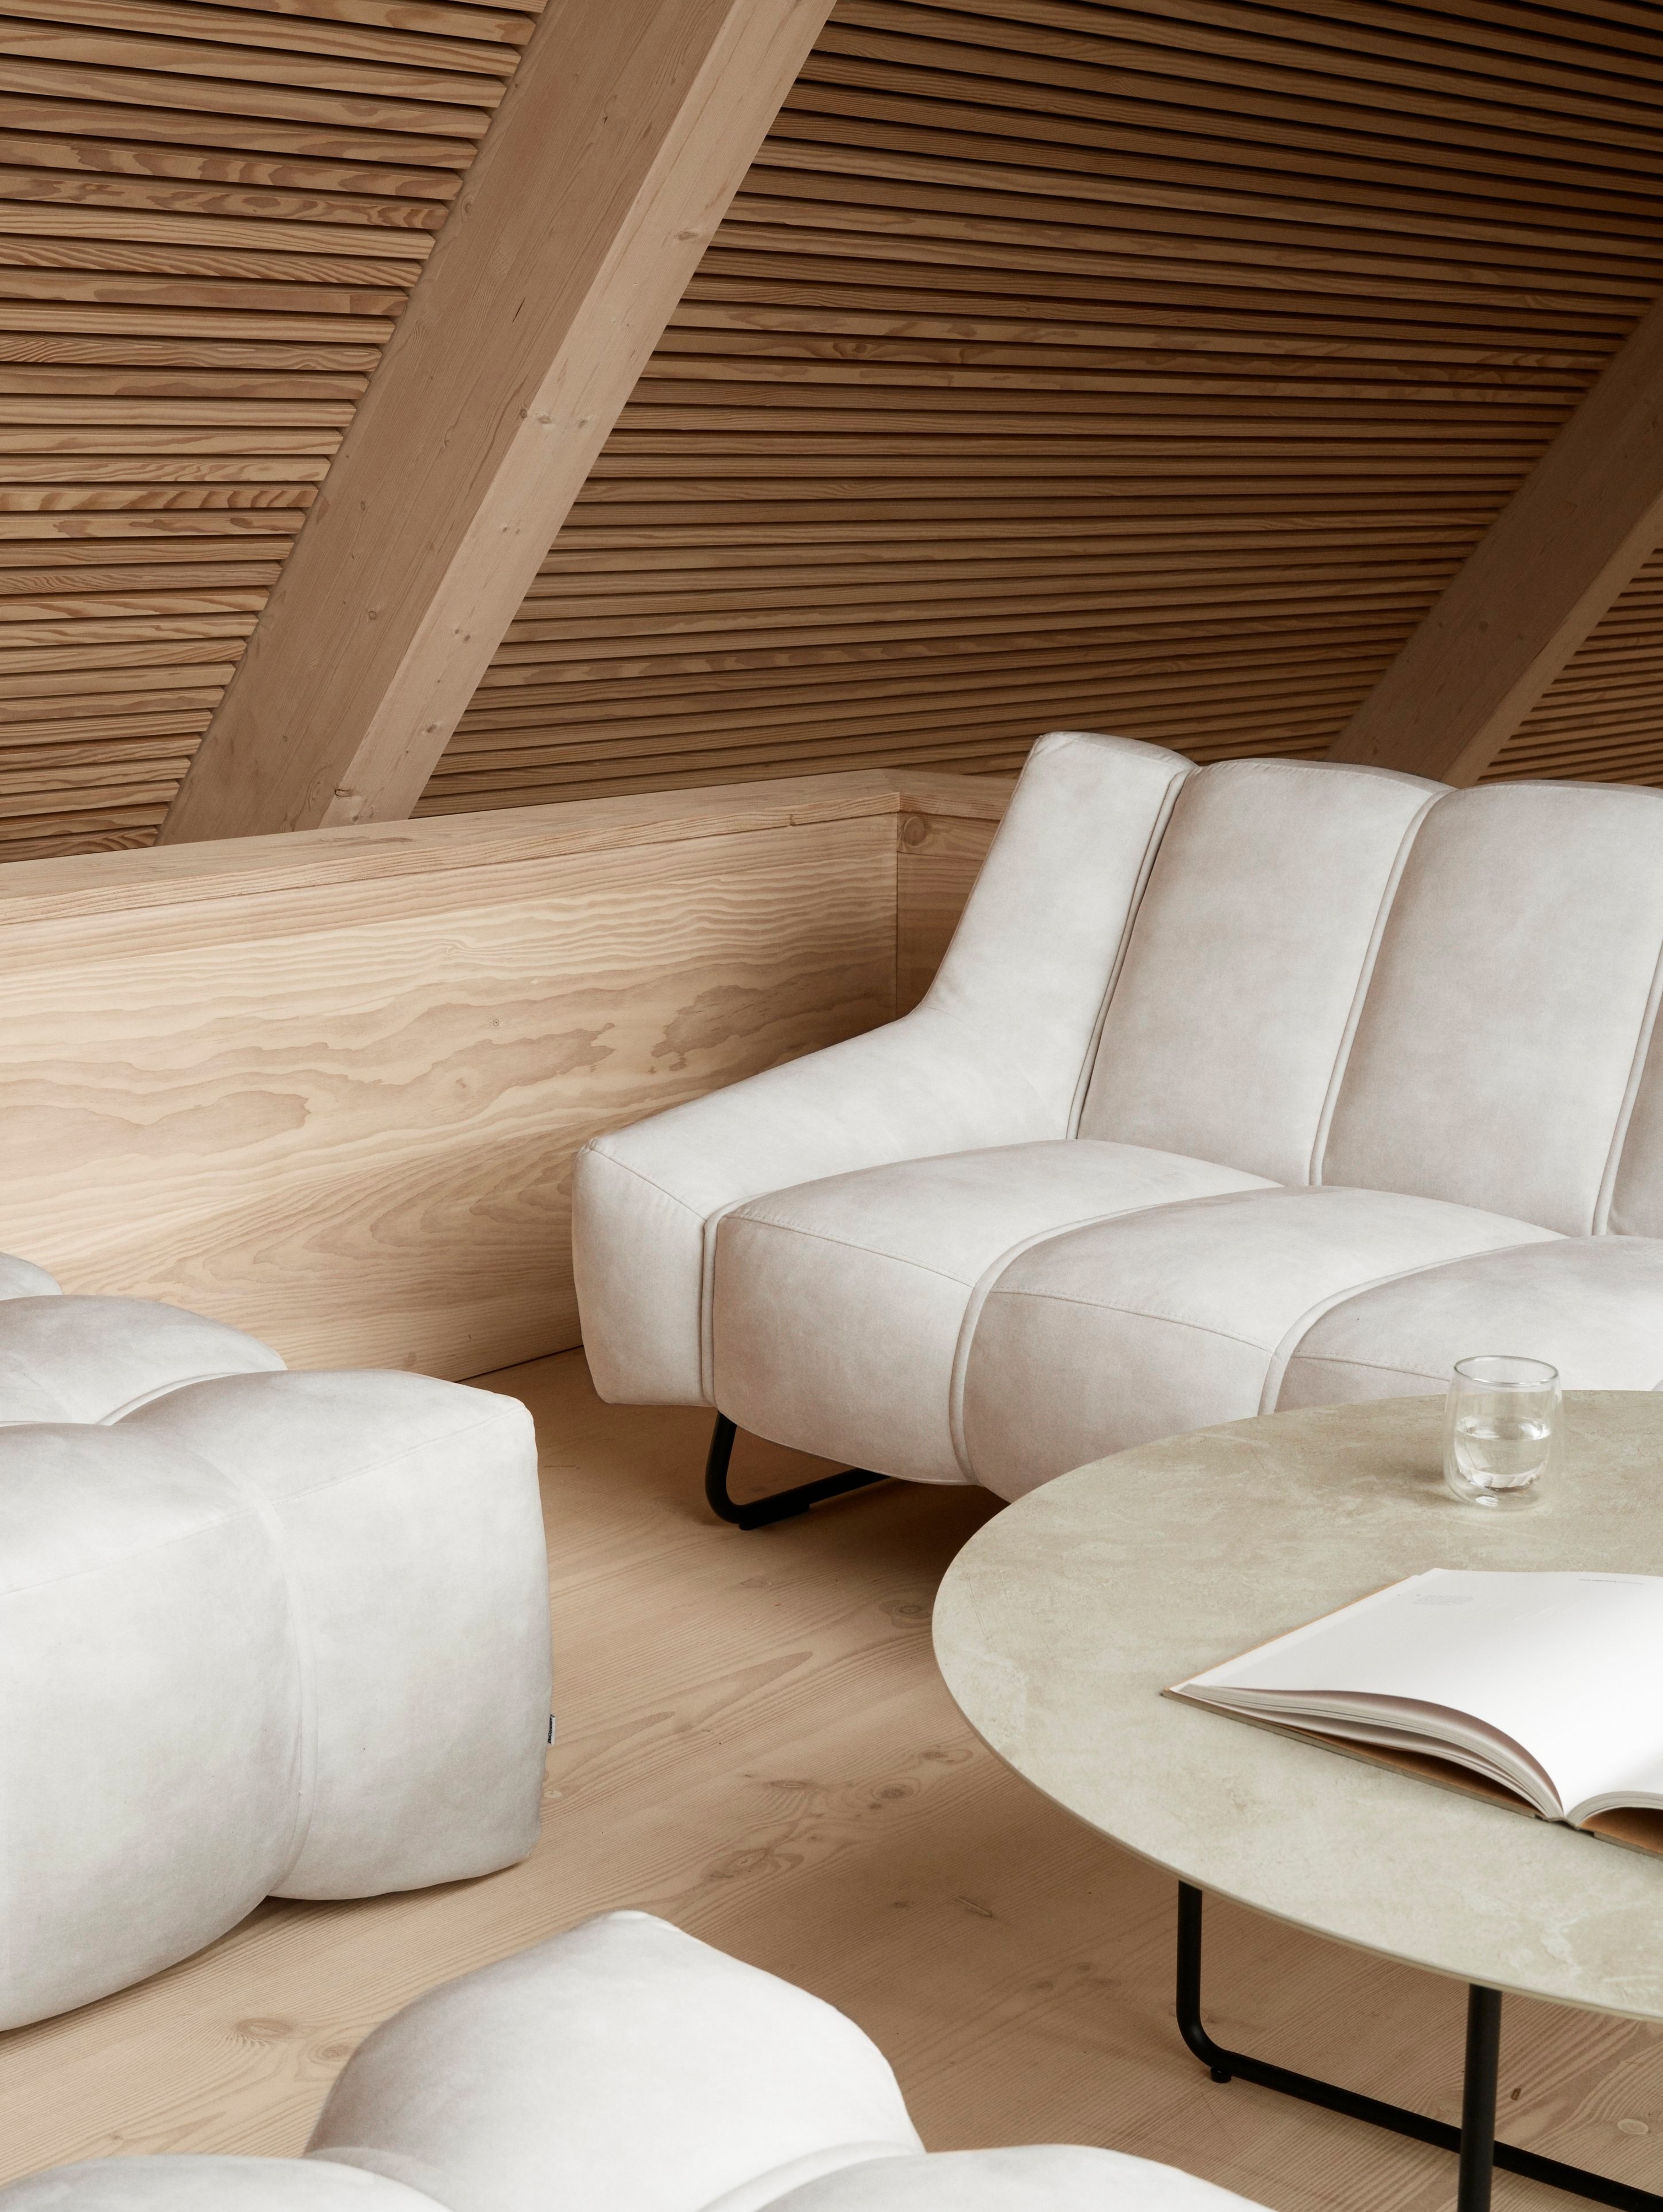 Obývací pokoj ve skandinávském stylu s pohovkou Nawabari a sladěnými taburety.